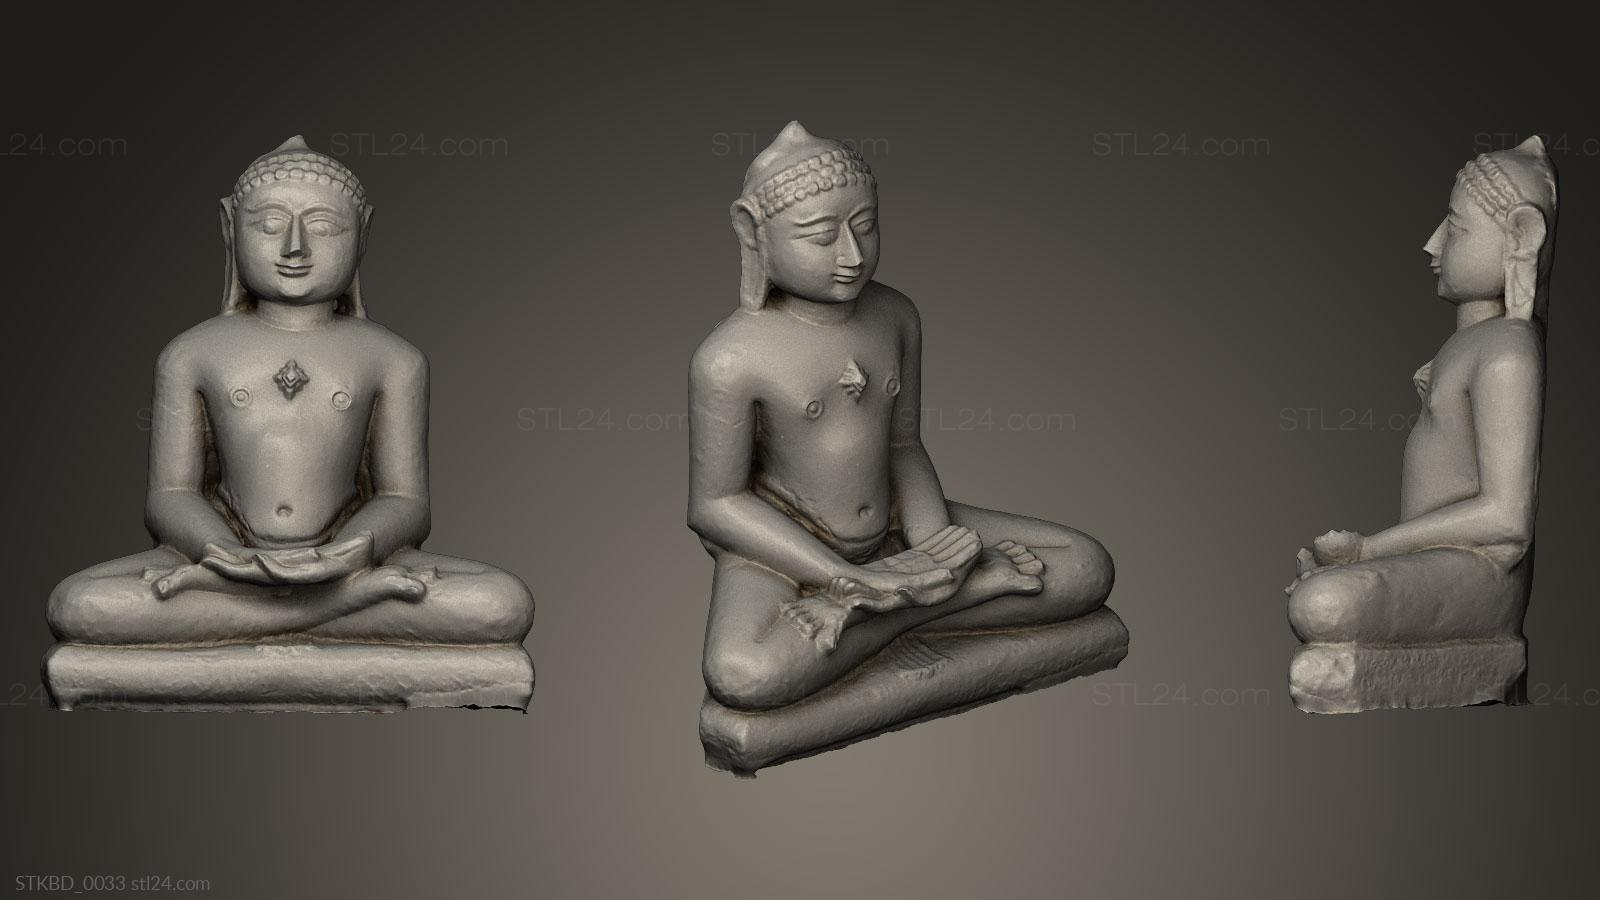 information about buddha and mahavira